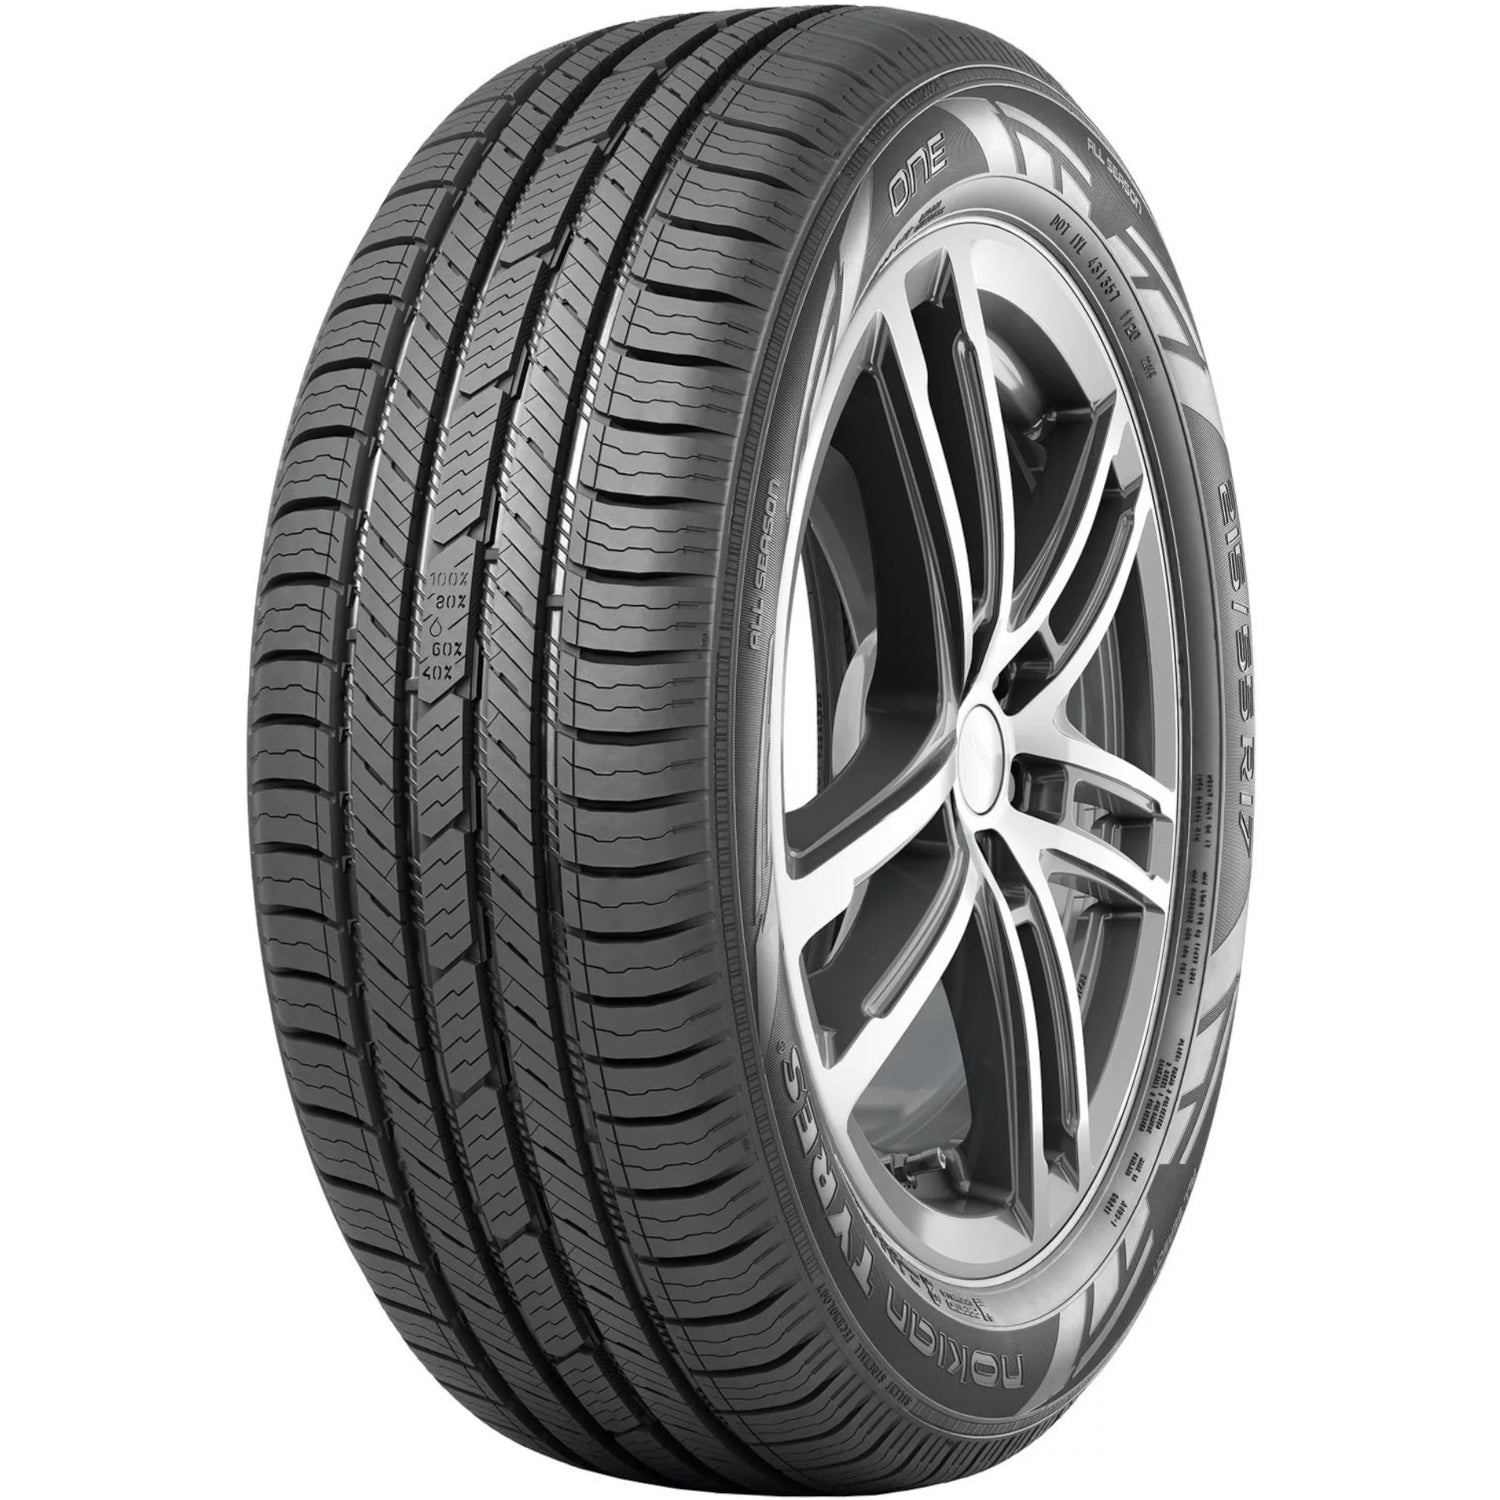 NOKIAN ONE 225/50R18XL (26.9X8.9R 18) Tires